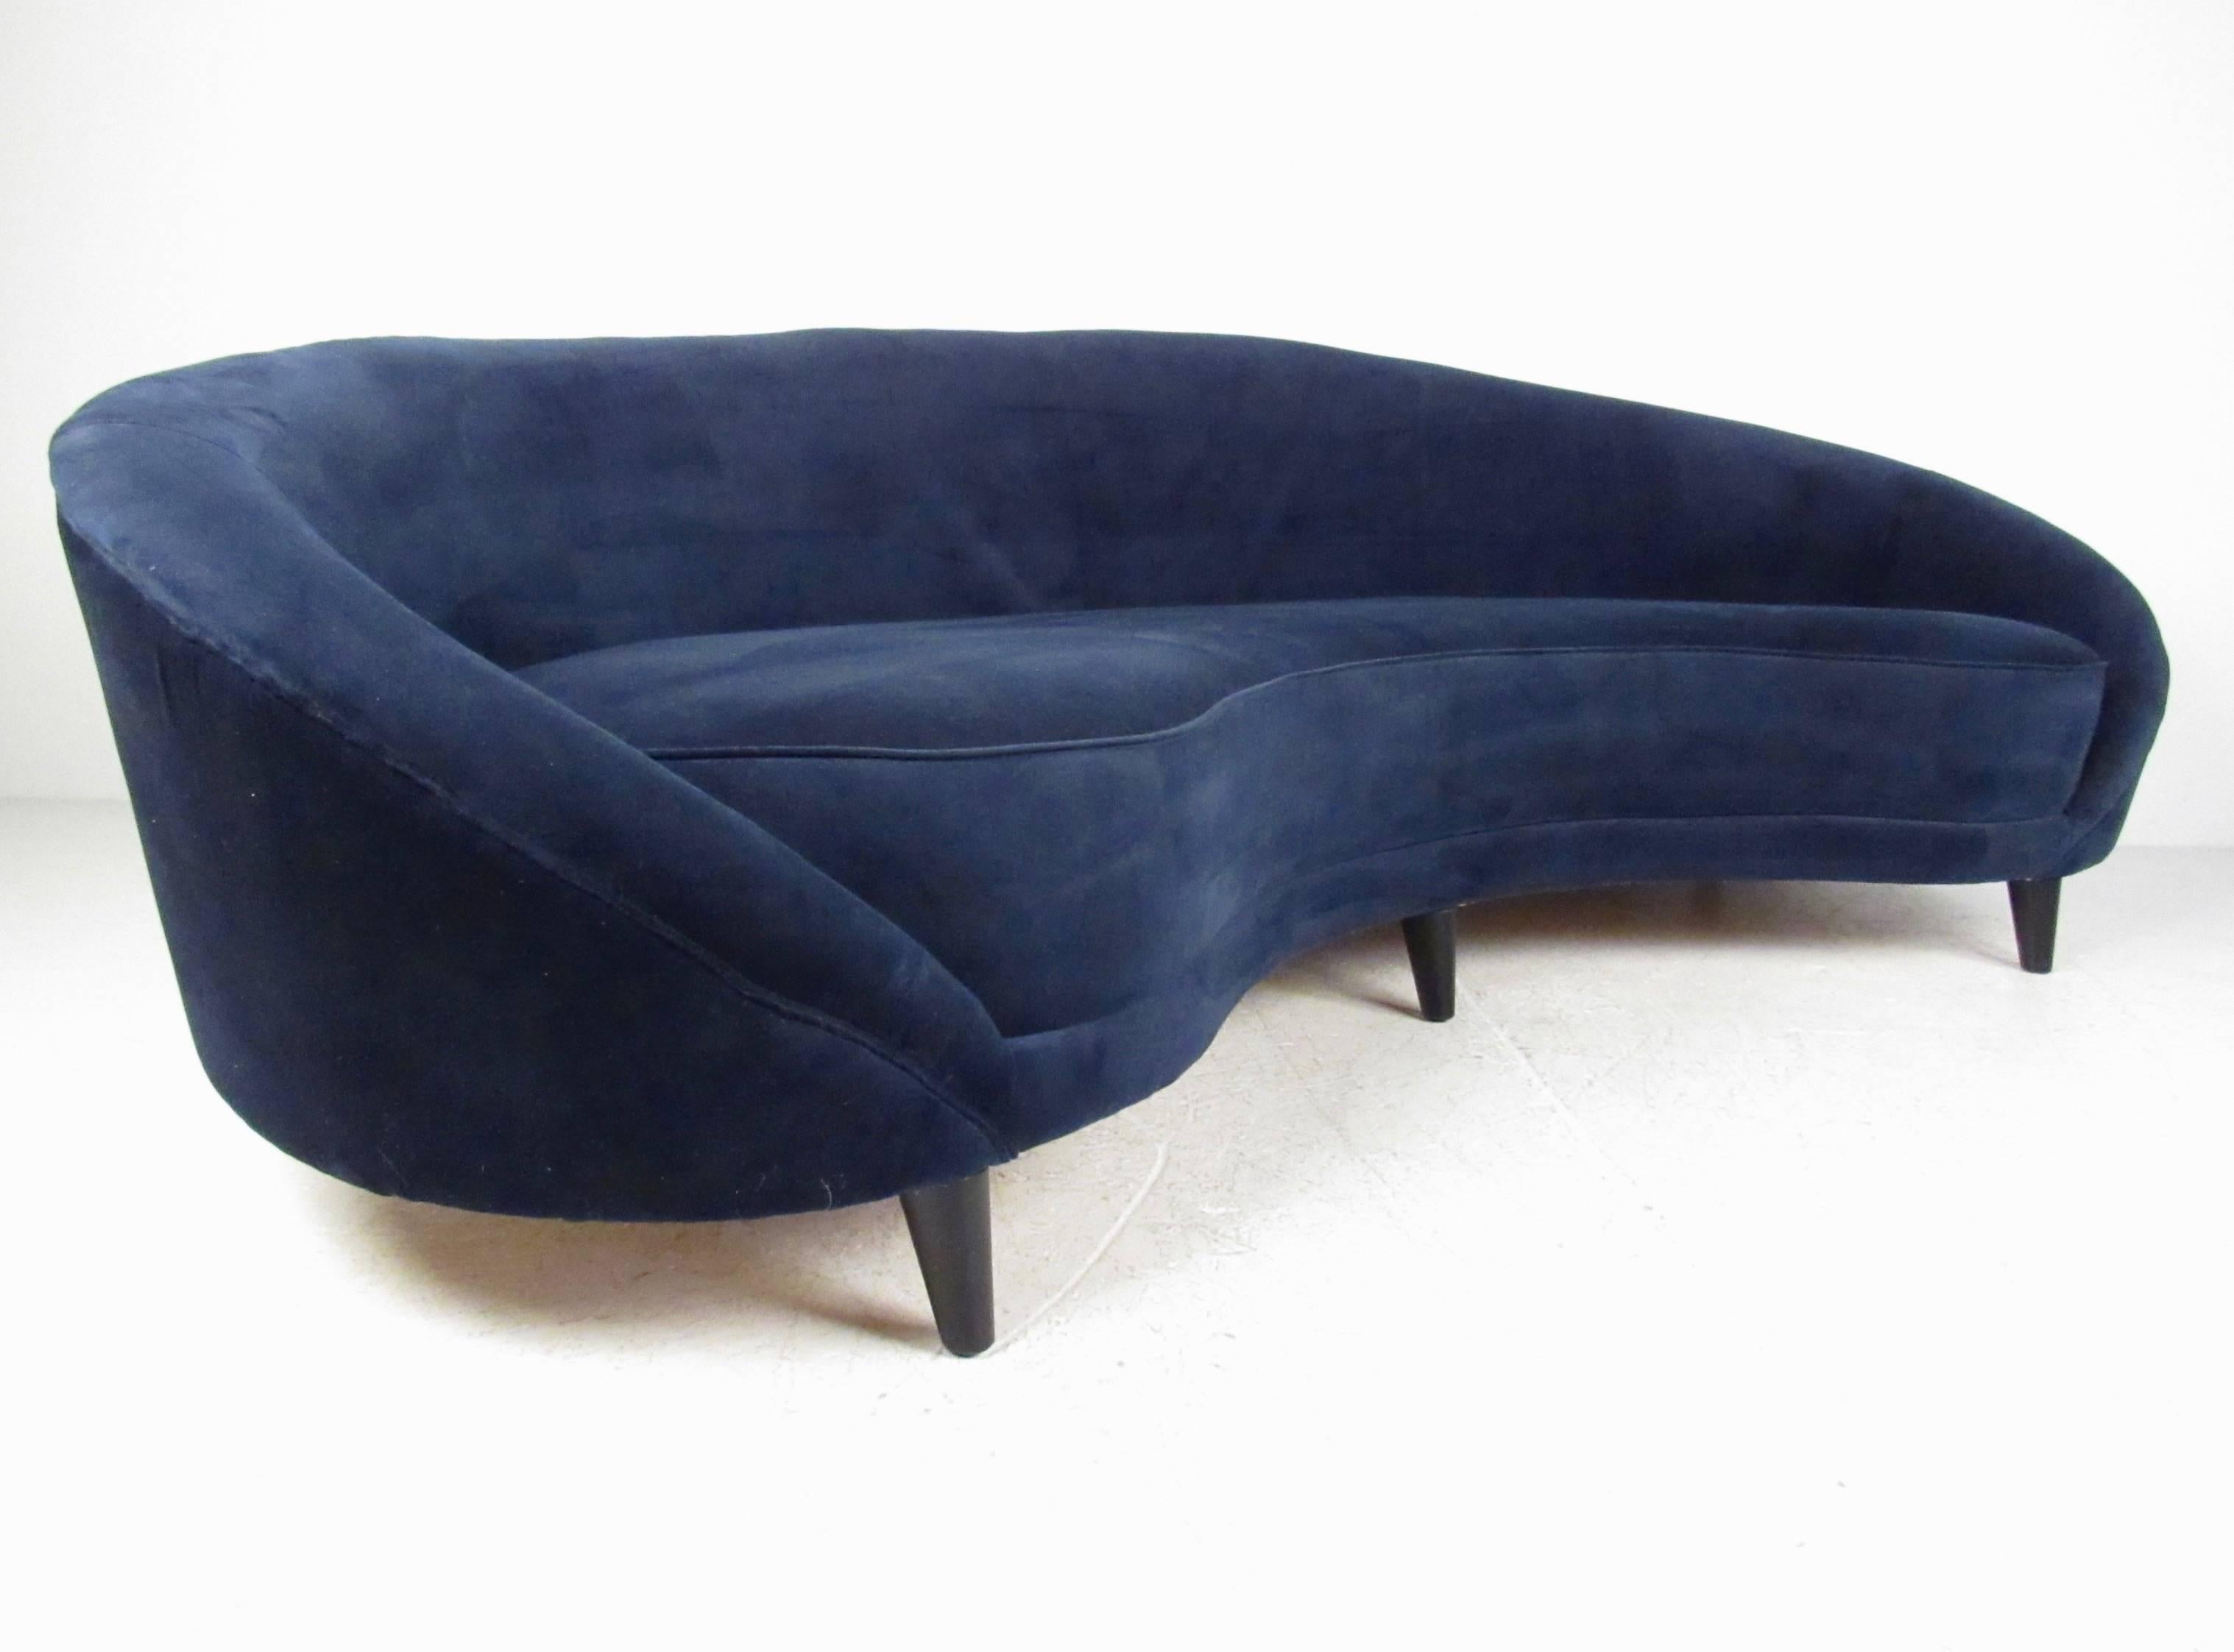 Dieses moderne Sofa mit abgerundeter Rückenlehne verfügt über ein bequemes gepolstertes Design mit sechs konischen Beinen für zusätzliche Unterstützung. Die beeindruckende Größe und Form dieses schönen, skulpturalen Sofas macht es zu einer